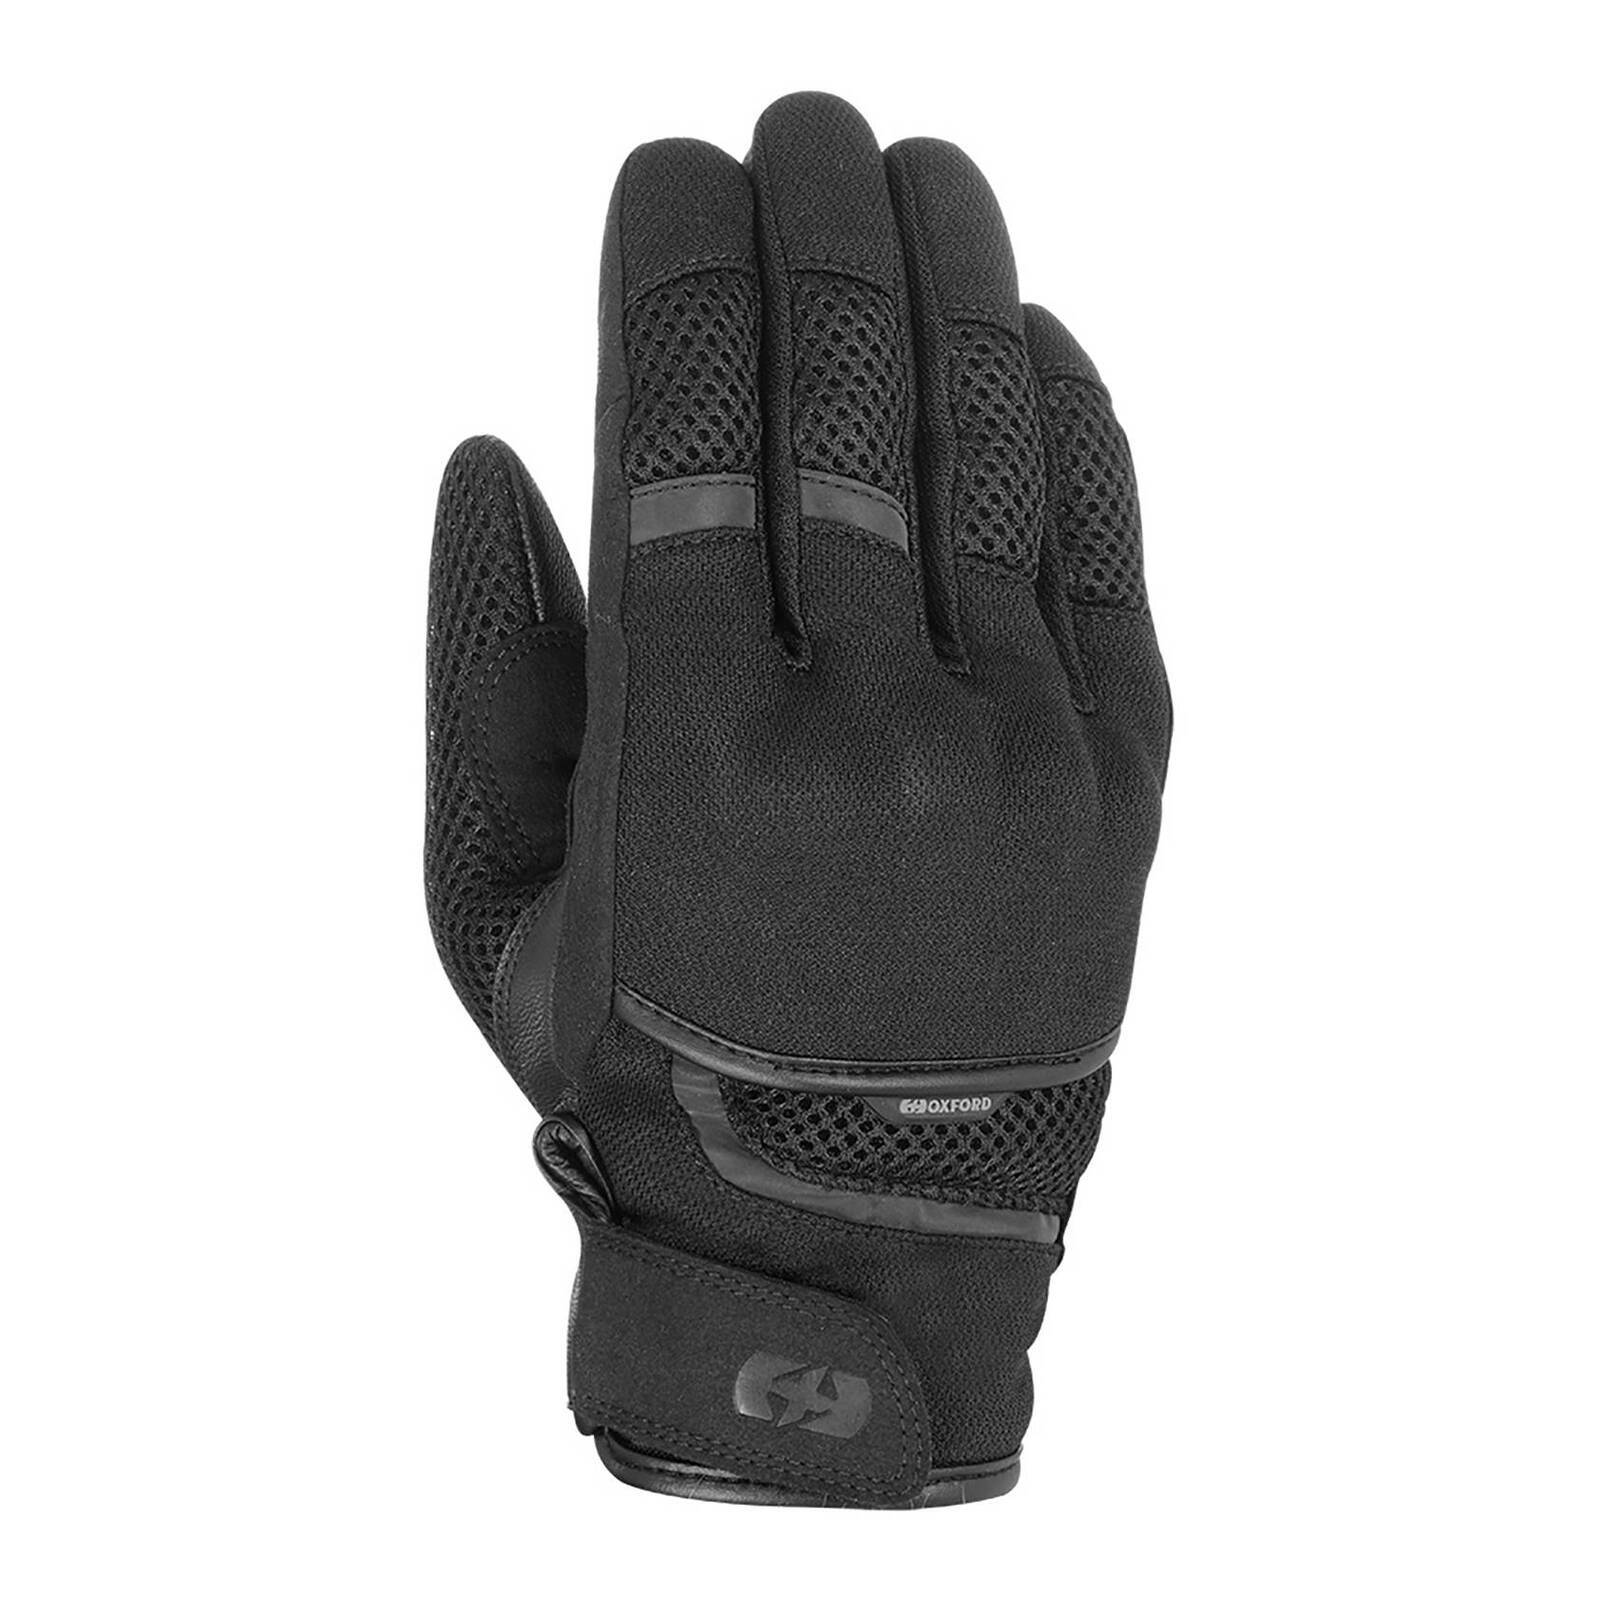 Oxford Brisbane Air Glove - Black (3XL)